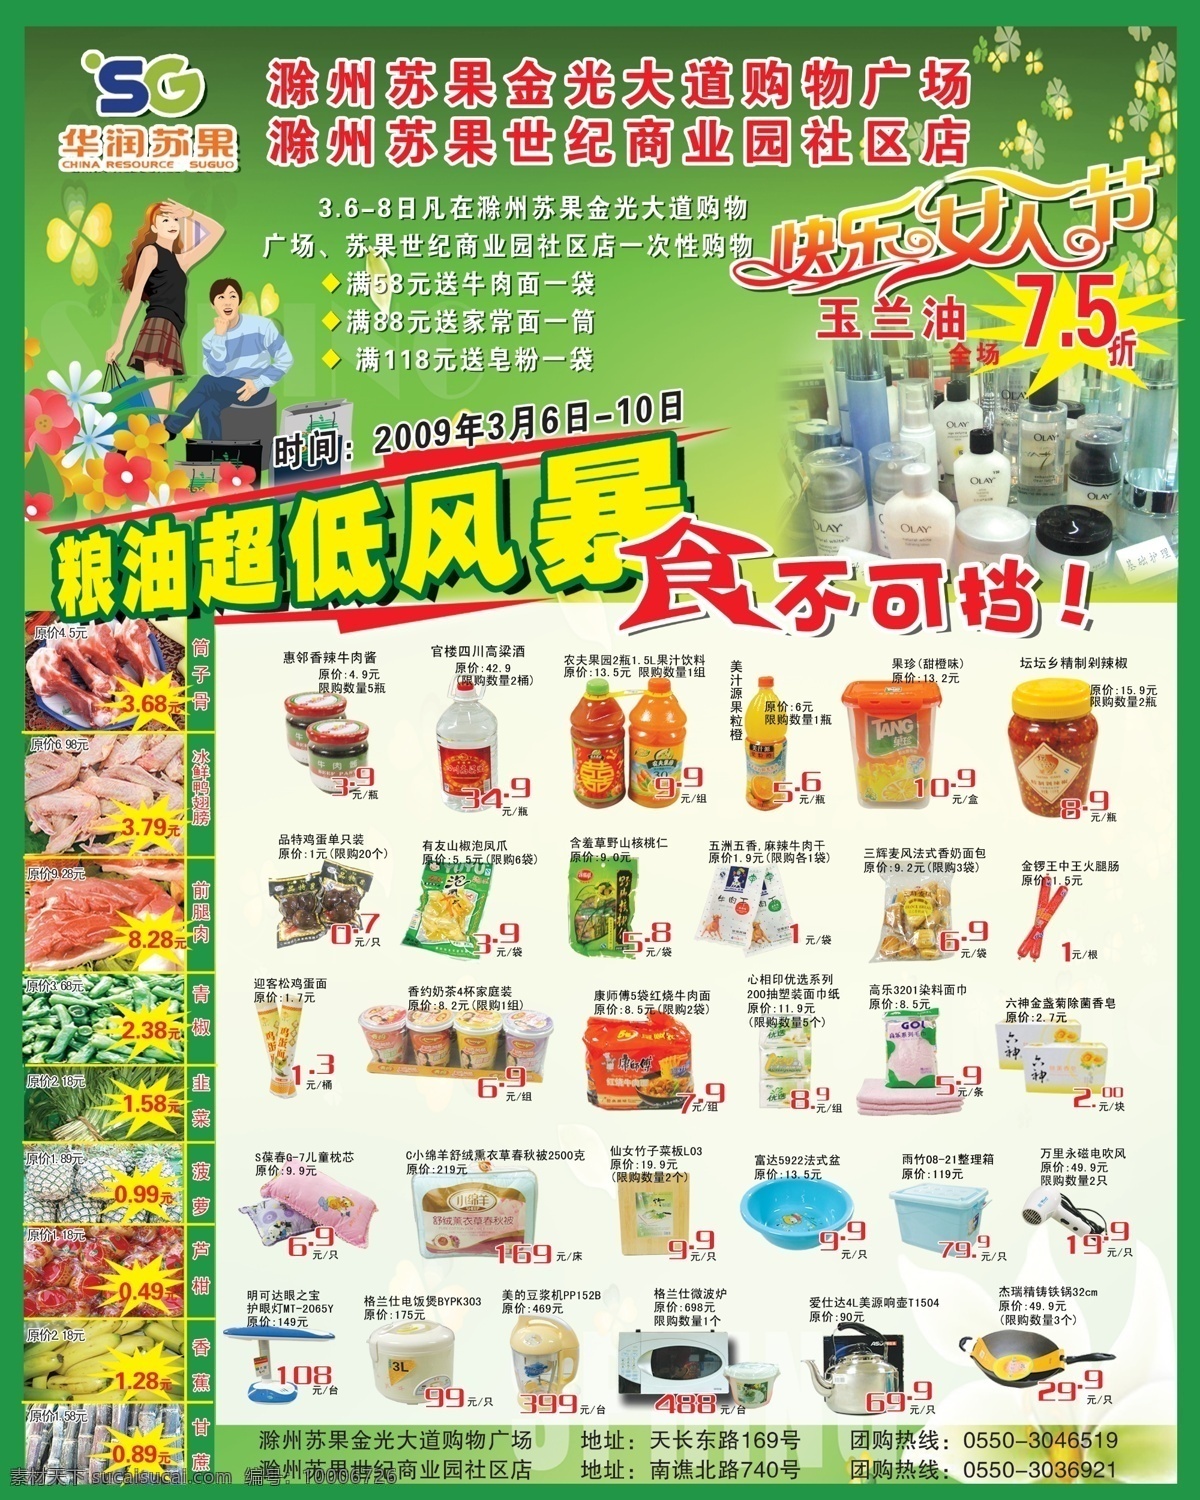 超市dm 超市dm图片 超市海报 广告设计模板 蔬菜 水果 源文件 超市 dm 模板下载 风景 生活 旅游餐饮